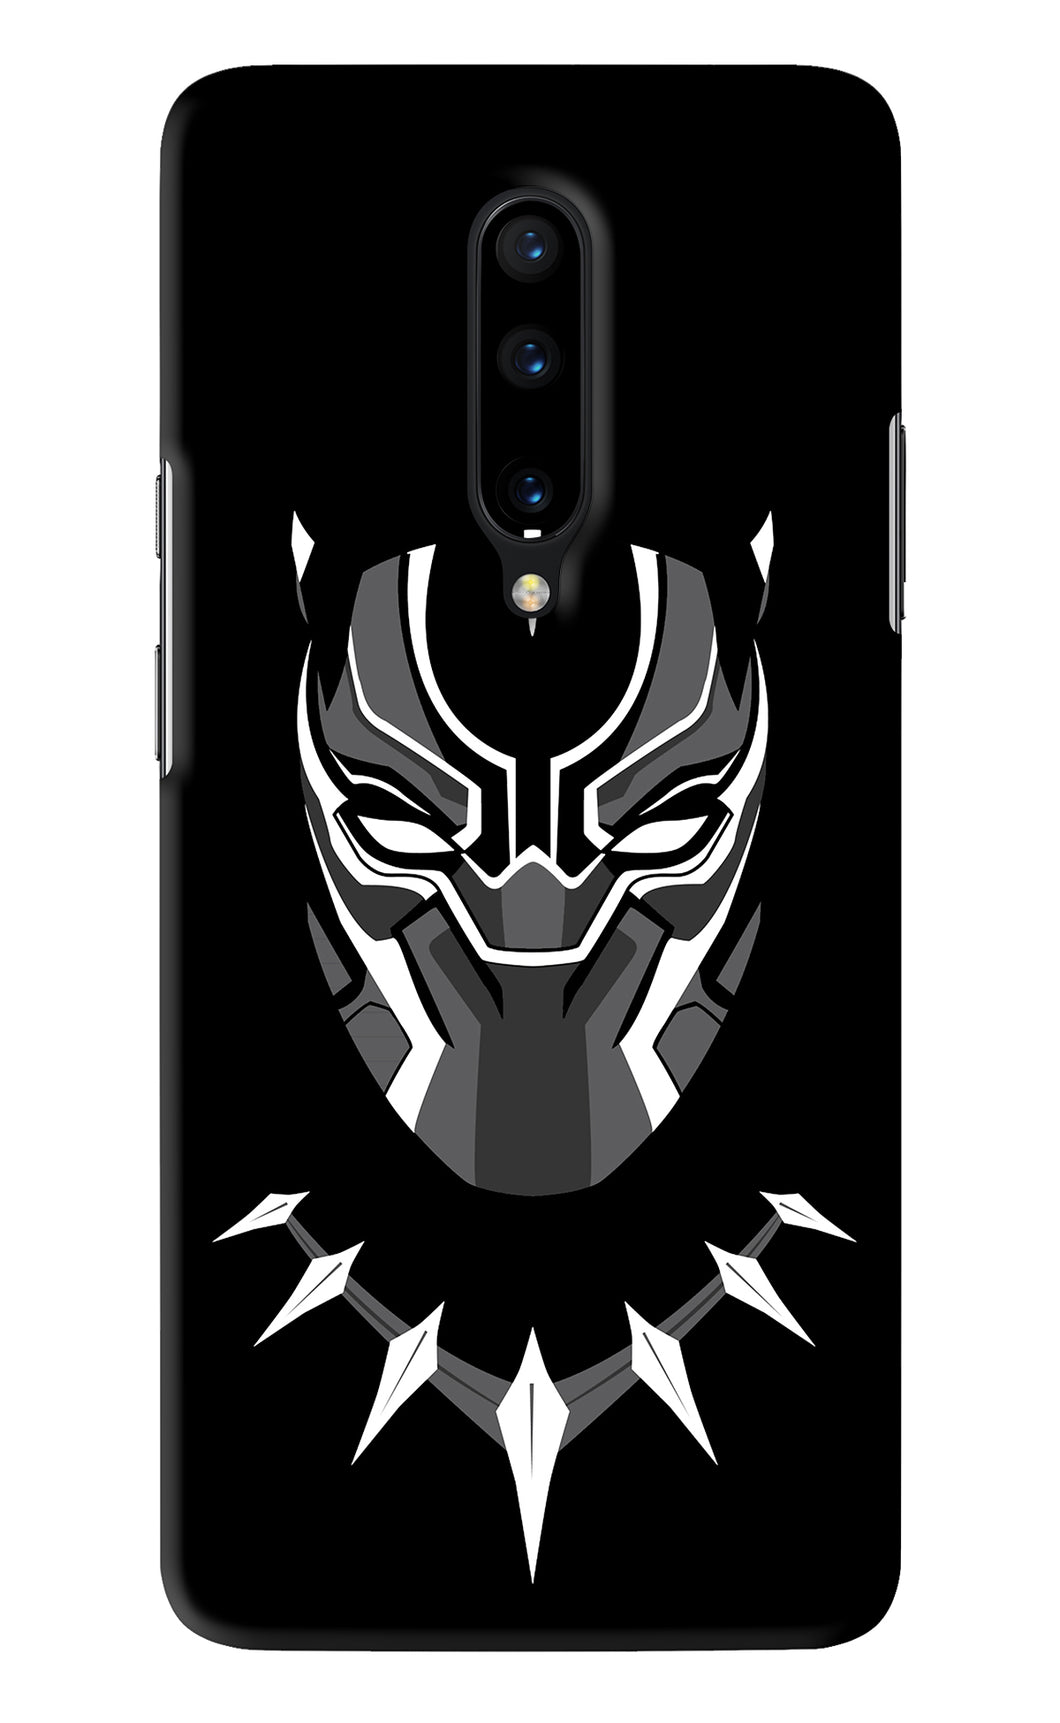 Black Panther OnePlus 7 Pro Back Skin Wrap